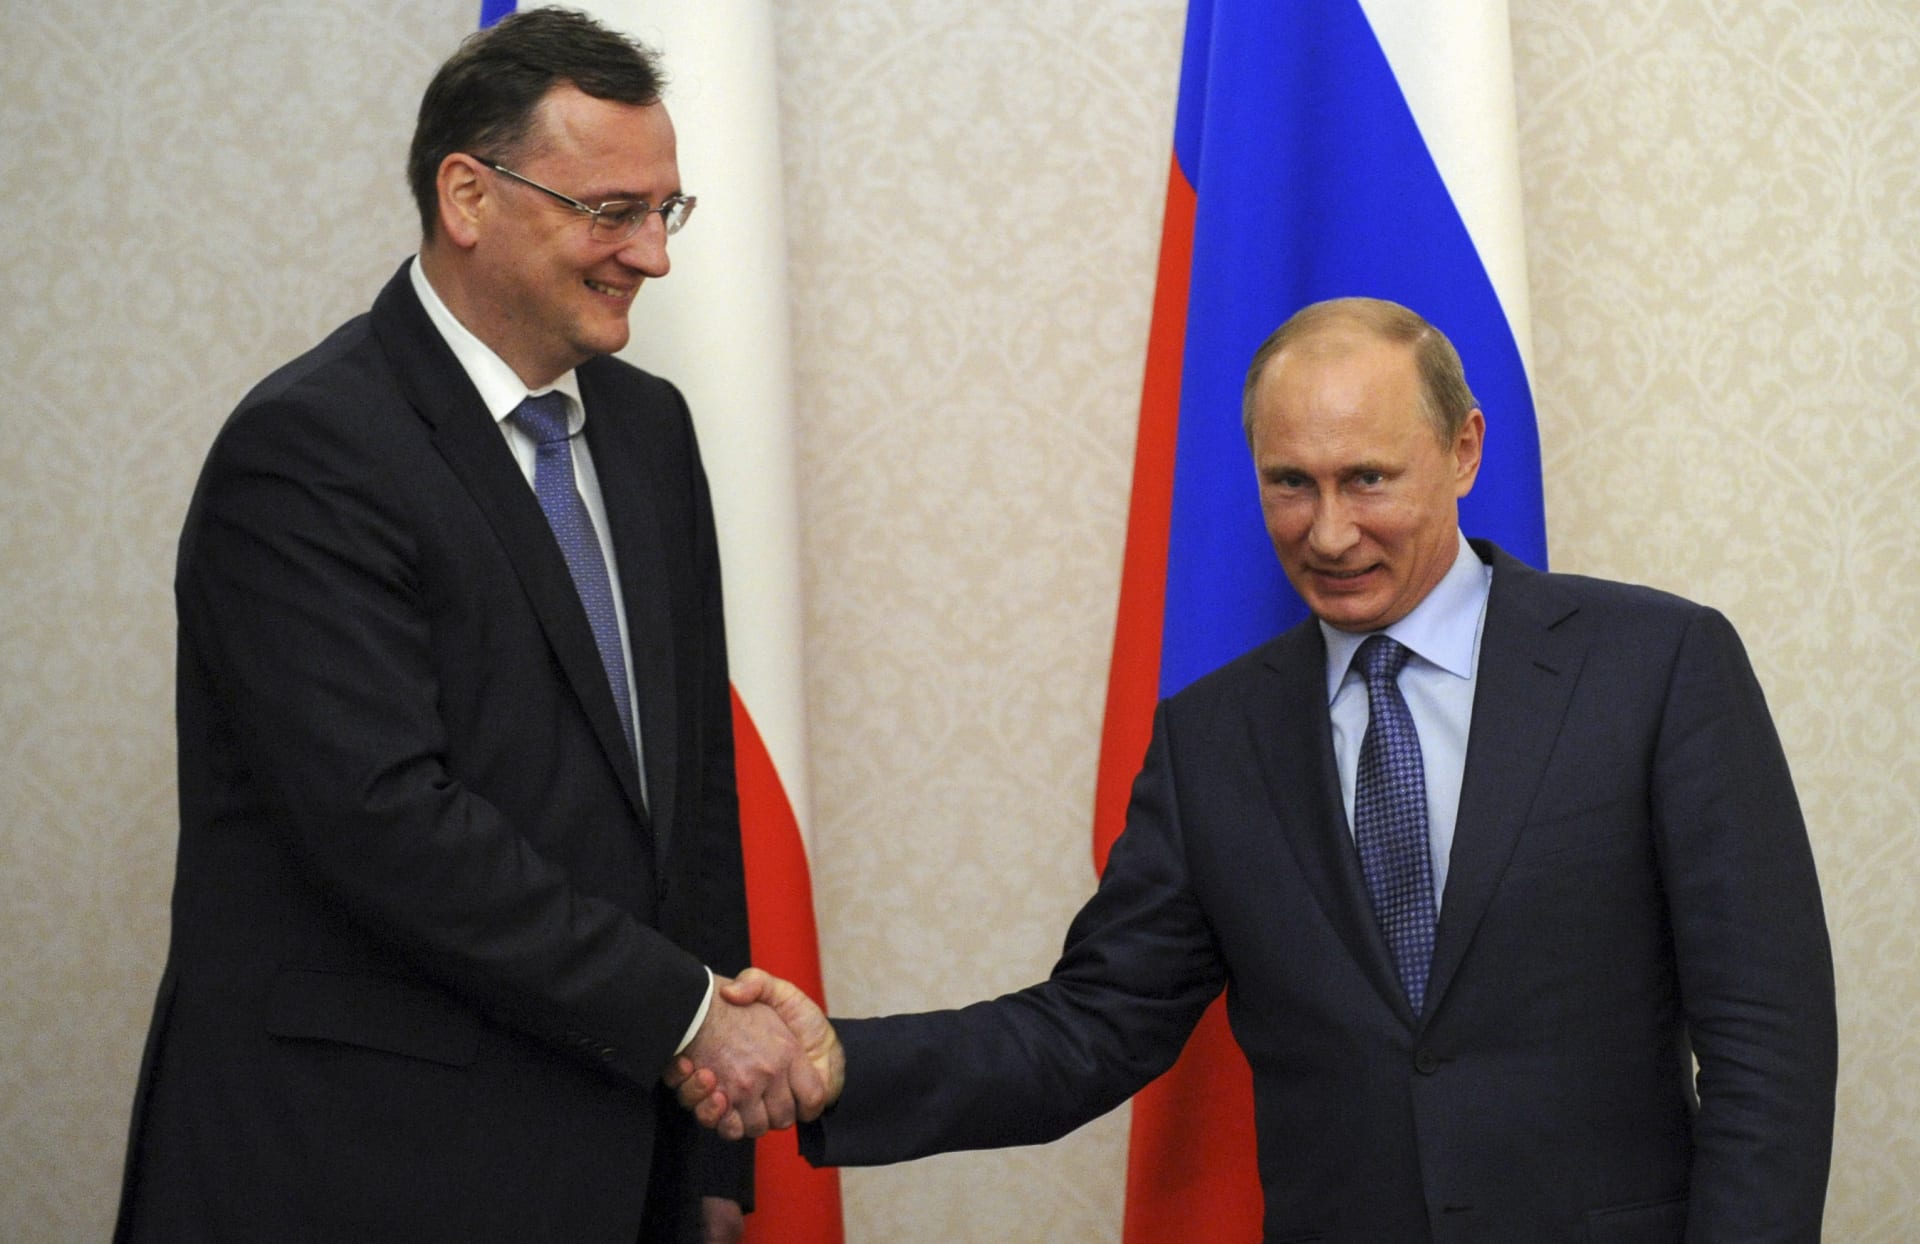 Při setkání českého premiéra Petra Nečase s ruským prezidentem, se Putin usmíval.